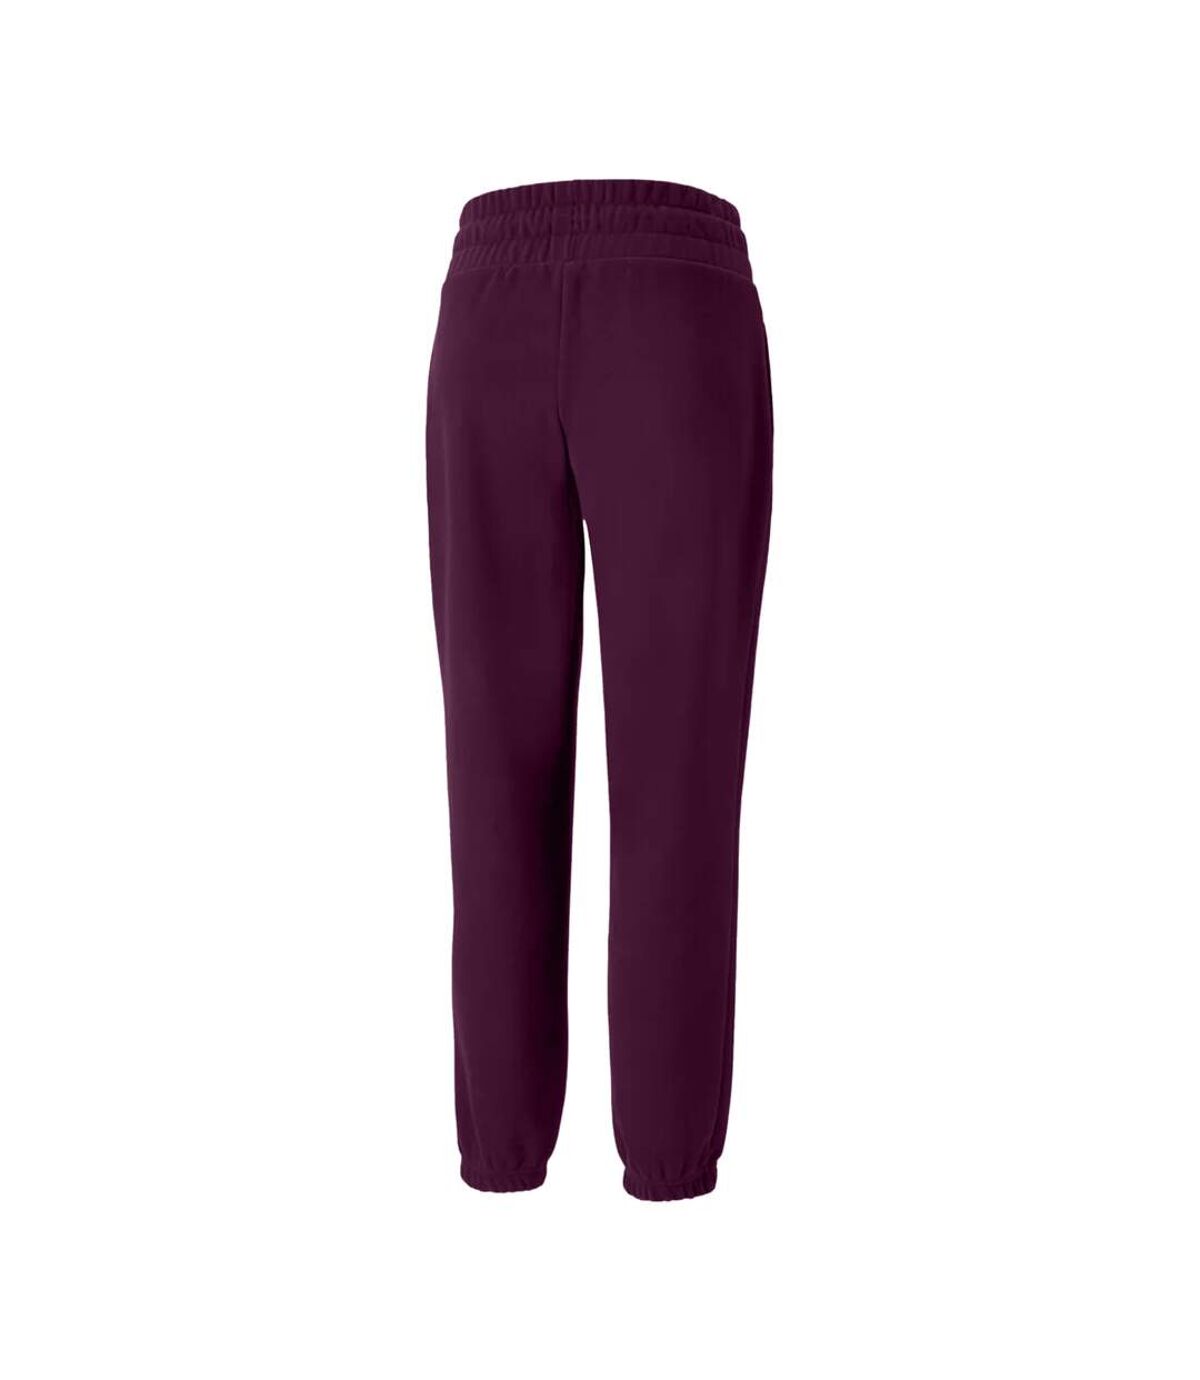 TriDri - Pantalon de jogging - Femme (Violet foncé) - UTRW8177